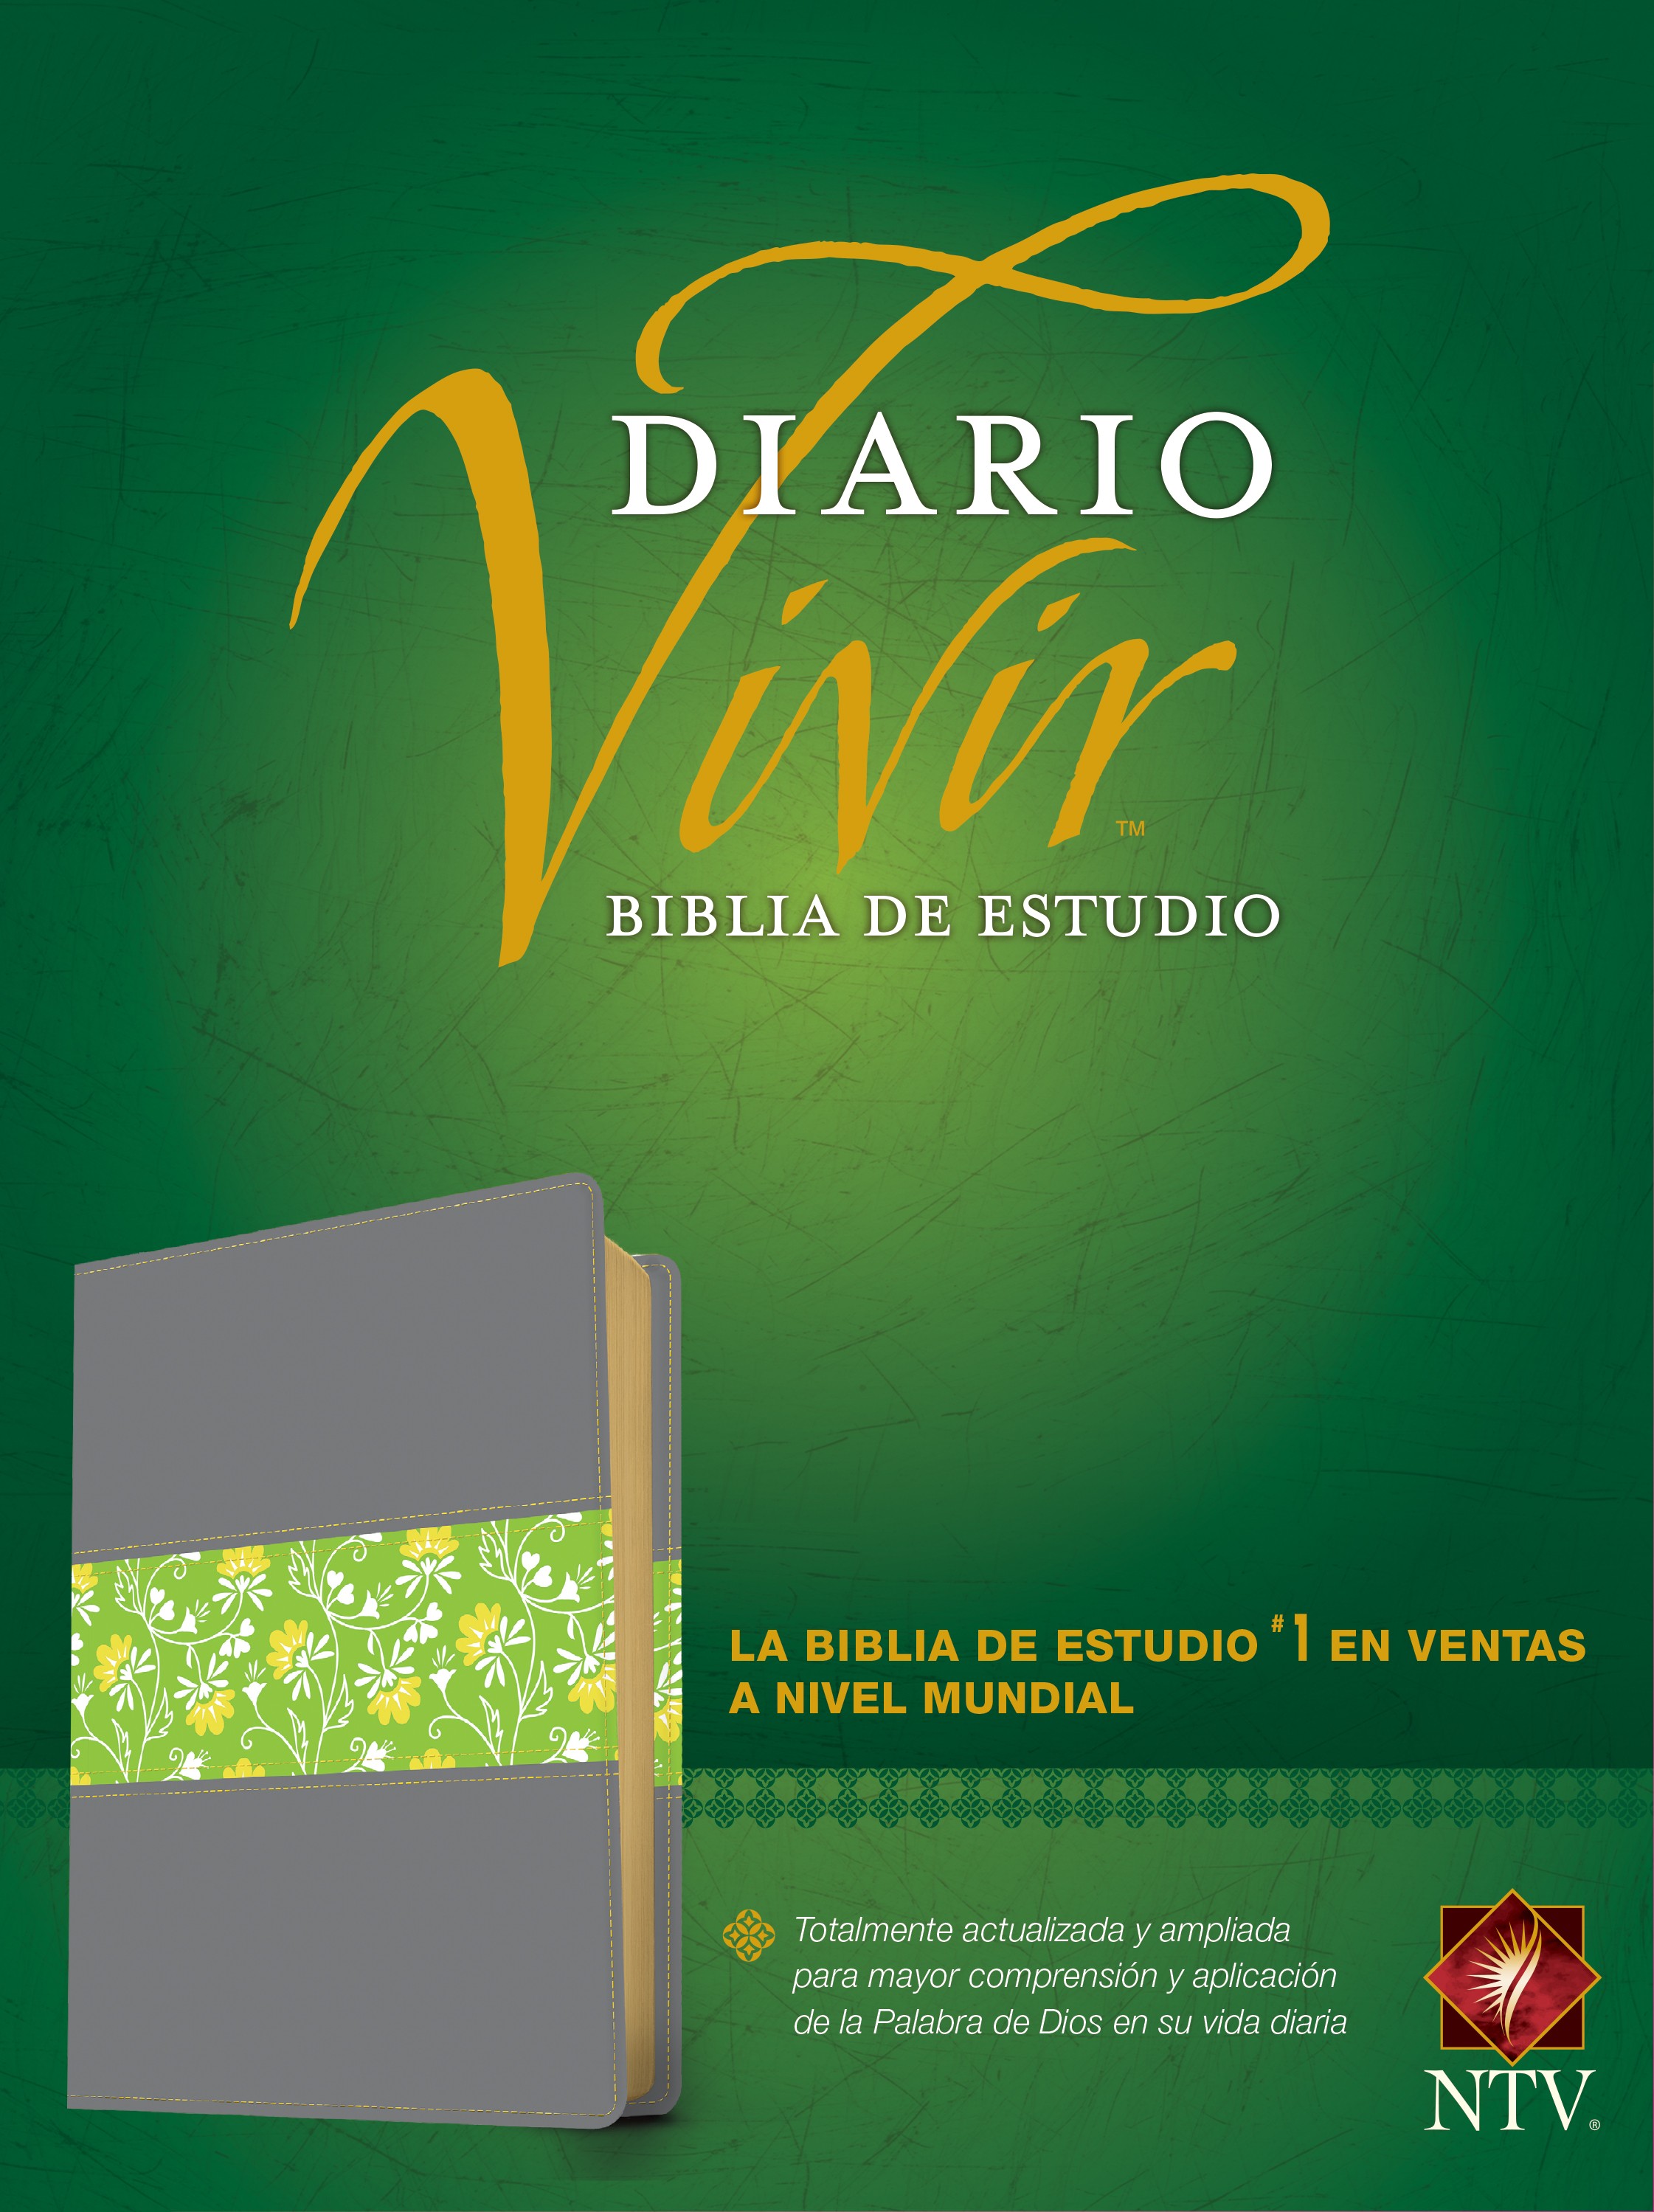  Biblia de estudio del diario vivir NTV (SentiPiel, Gris/Verde, Letra Roja)